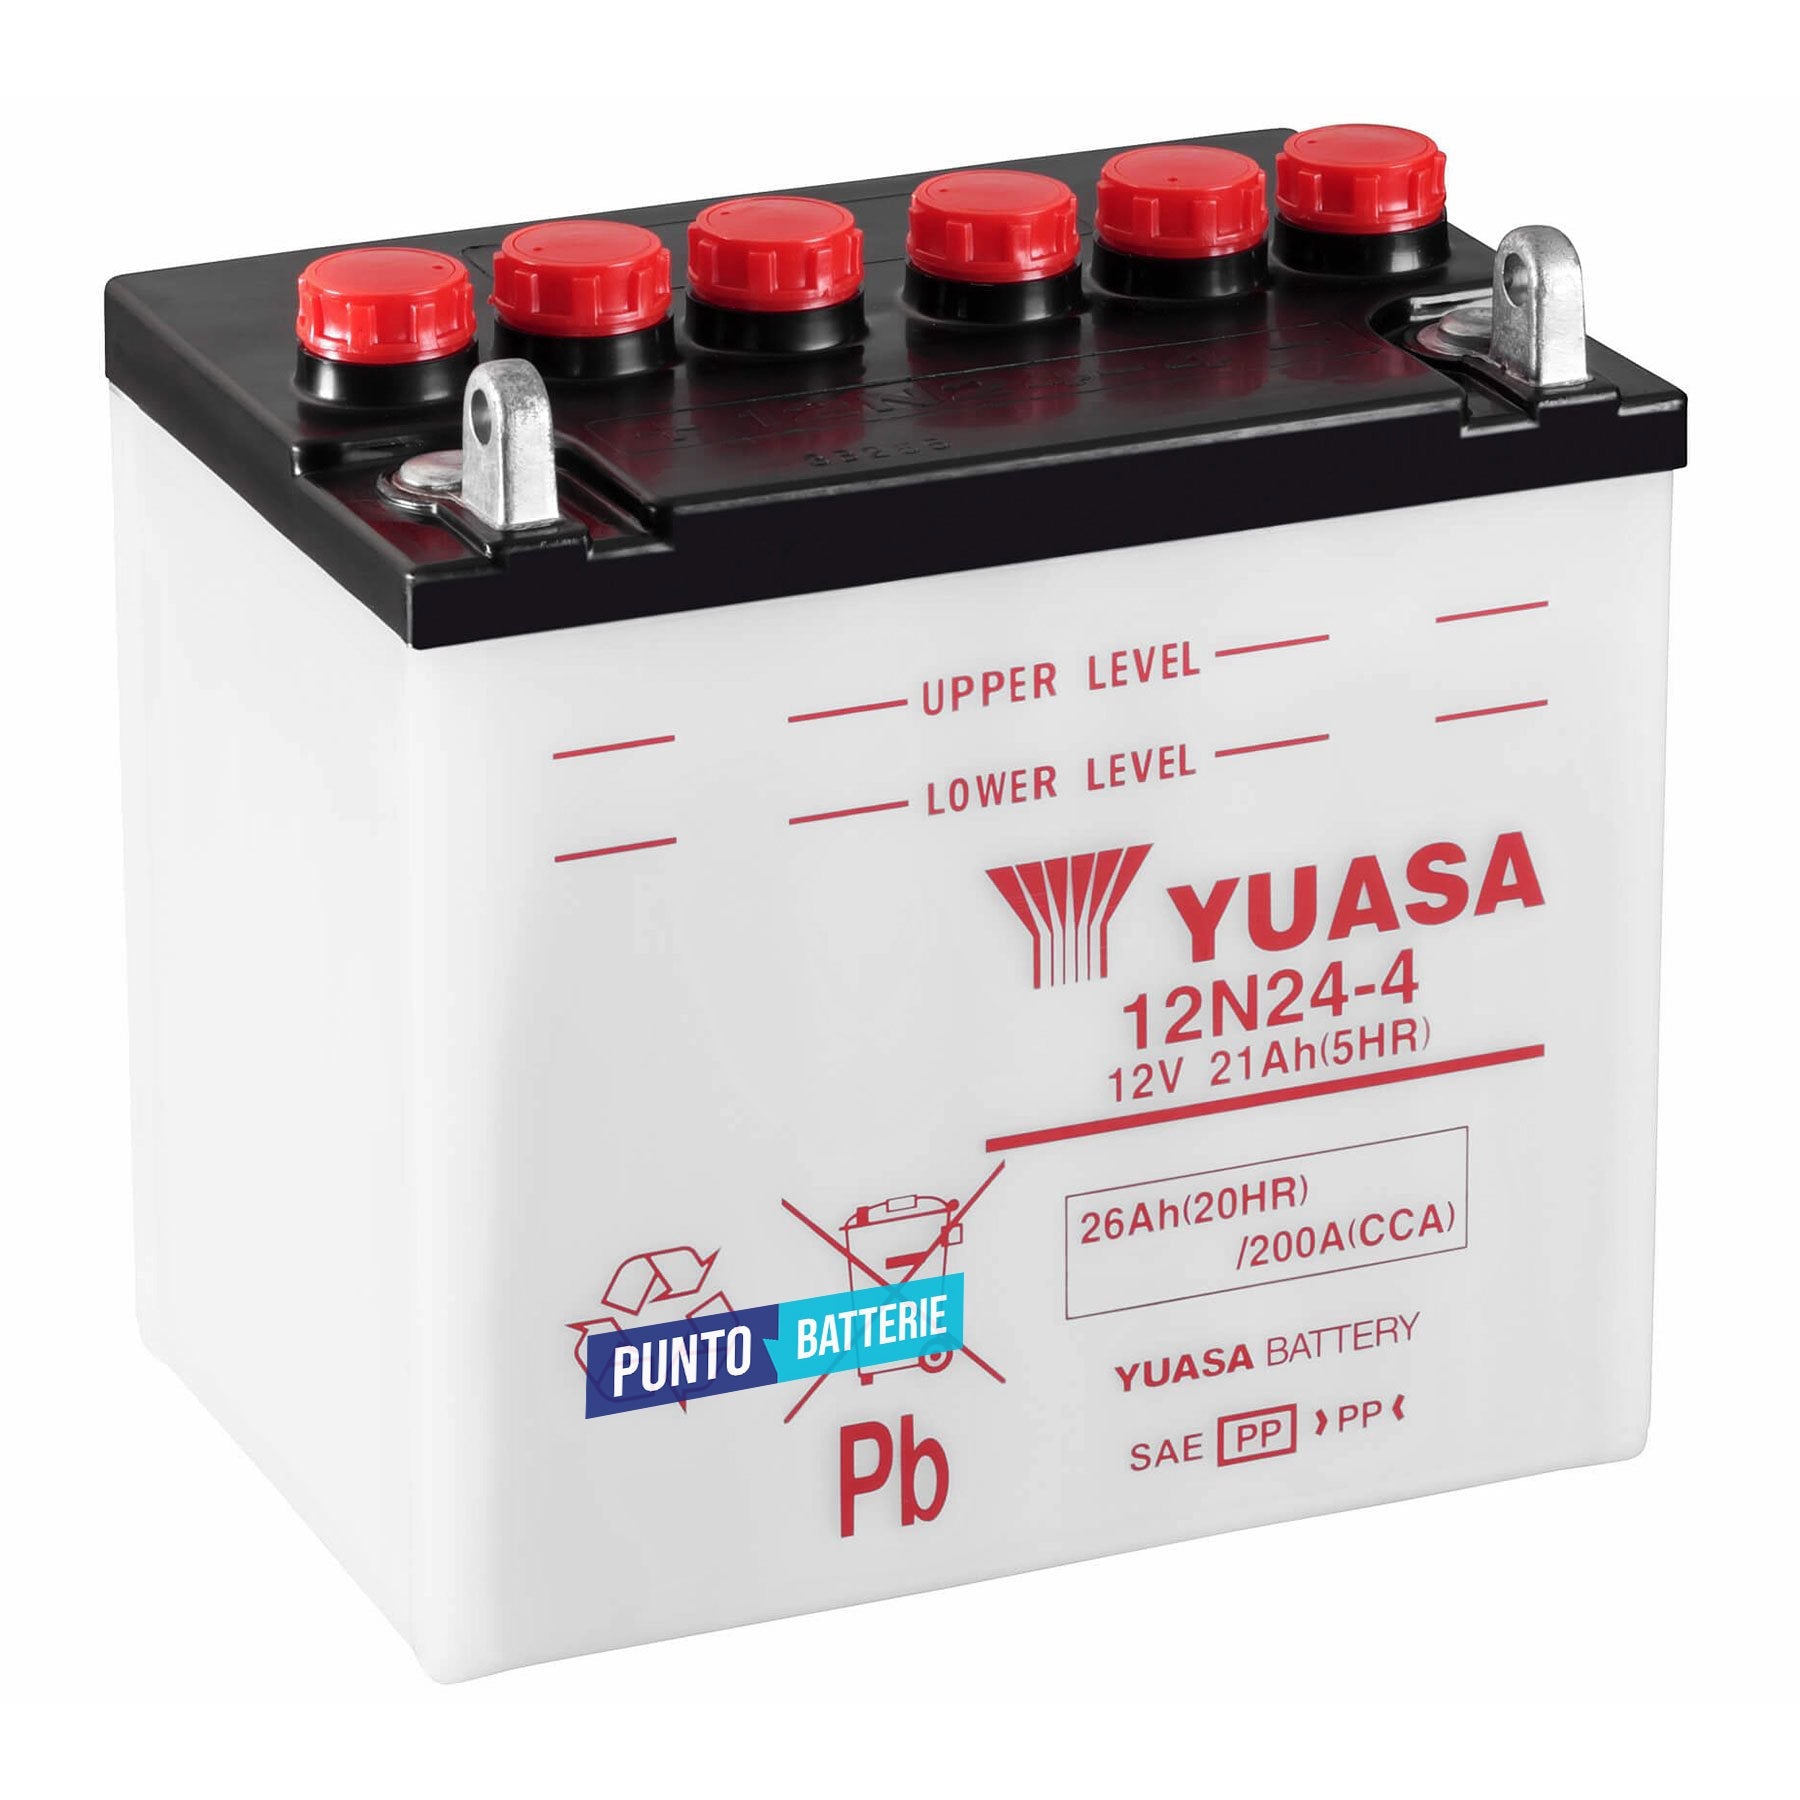 Batteria originale Yuasa Conventional 12N24-4, dimensioni 184 x 124 x 179, polo positivo a sinistra, 12 volt, 24 amperora, 190 ampere. Batteria per moto, scooter e powersport.